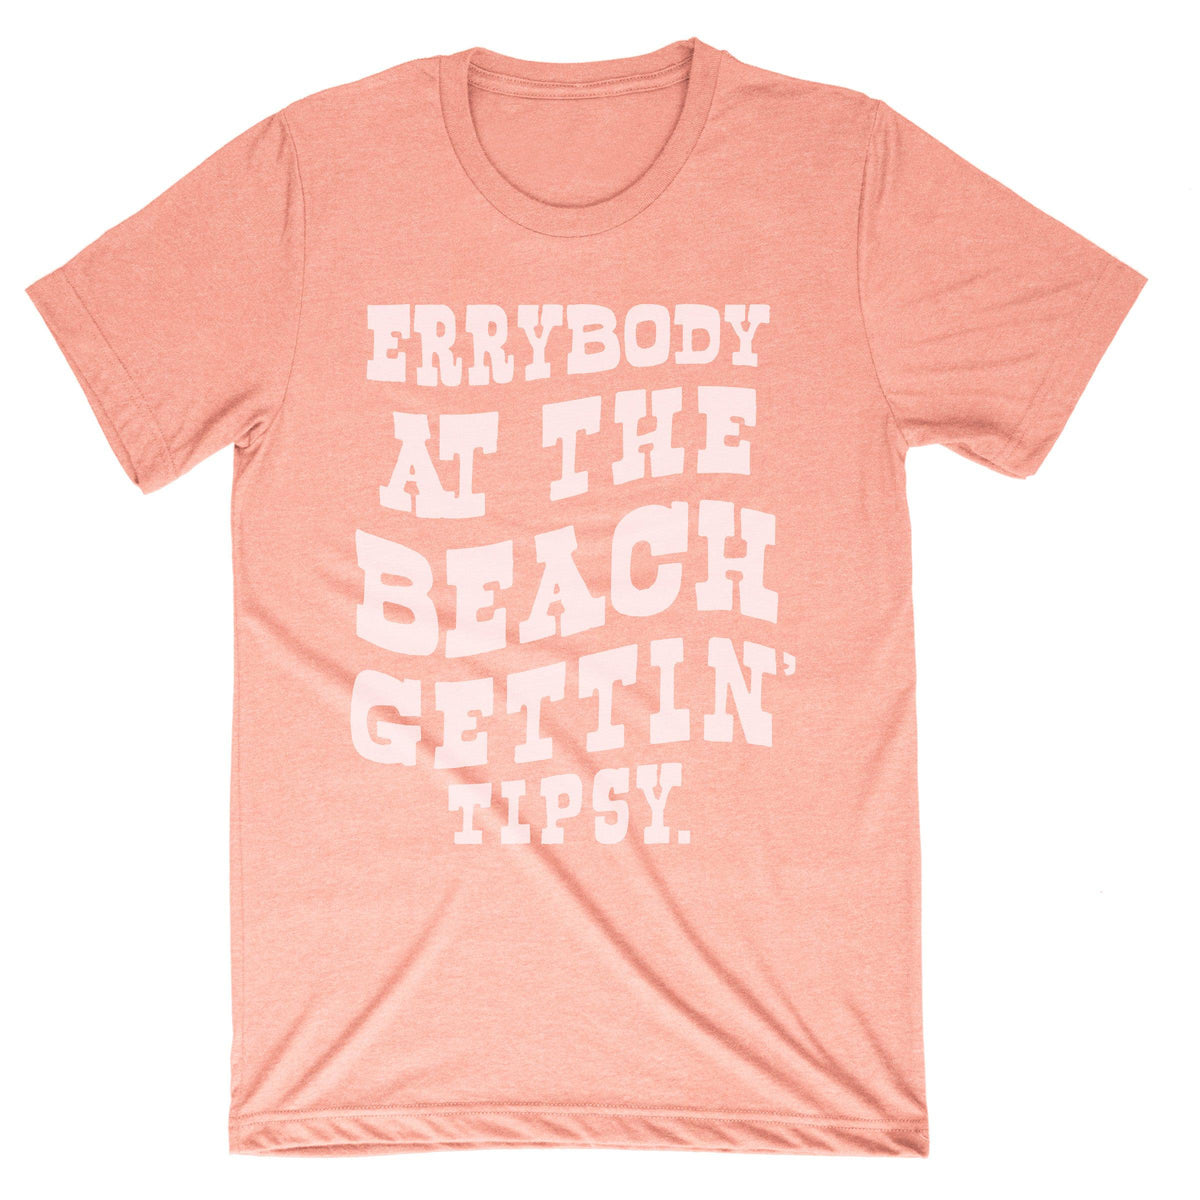 Errybody at the Beach Tee